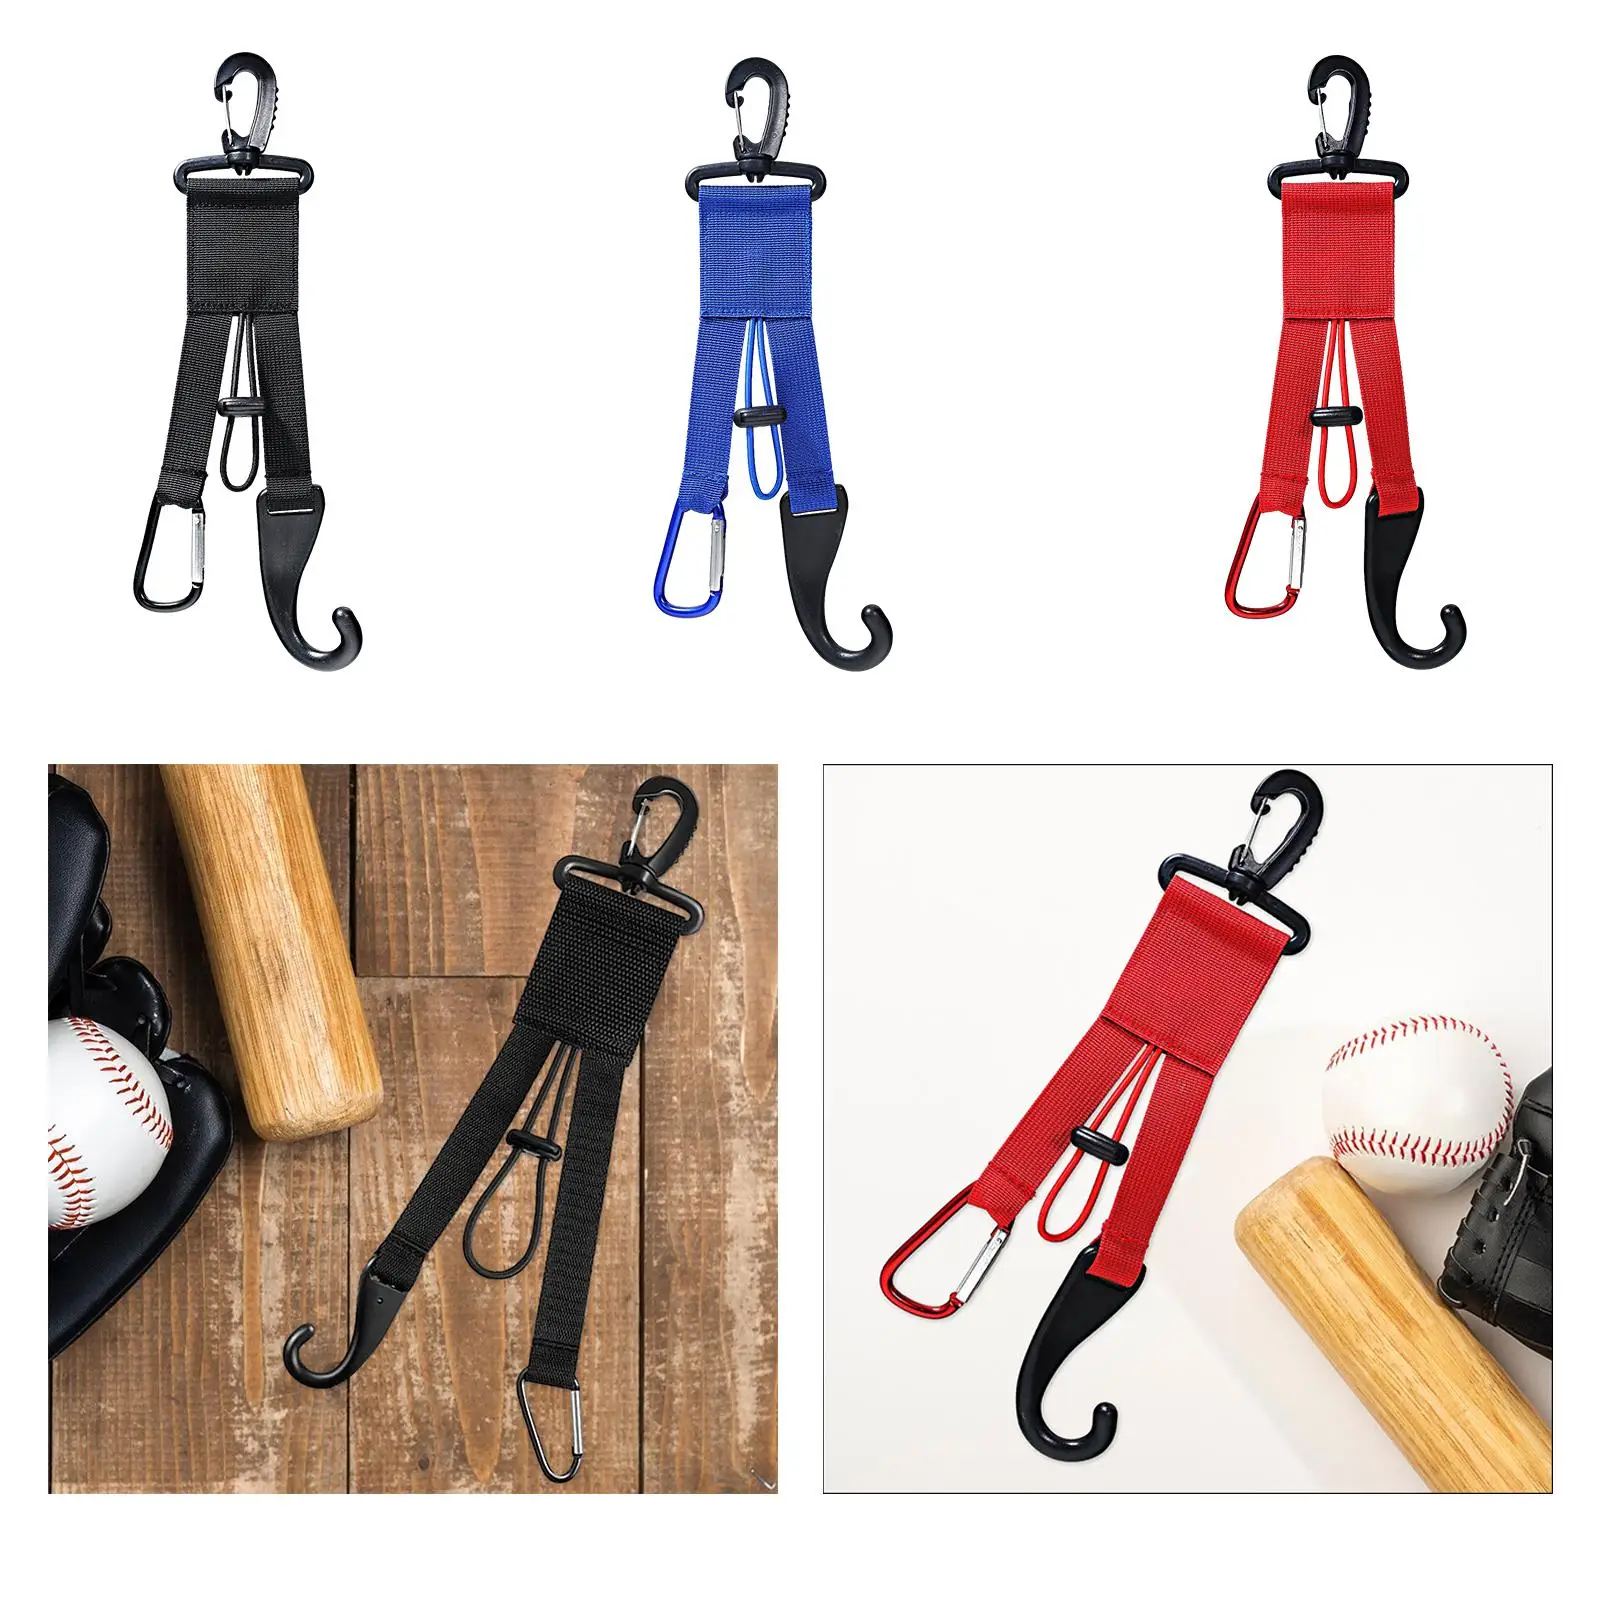 Dugout Gear Hanger, Dugout Bats Hanger, Keeps Your Glove Hat Bats Off The Ground, Attaches to Fence Baseball Dugout Organizer